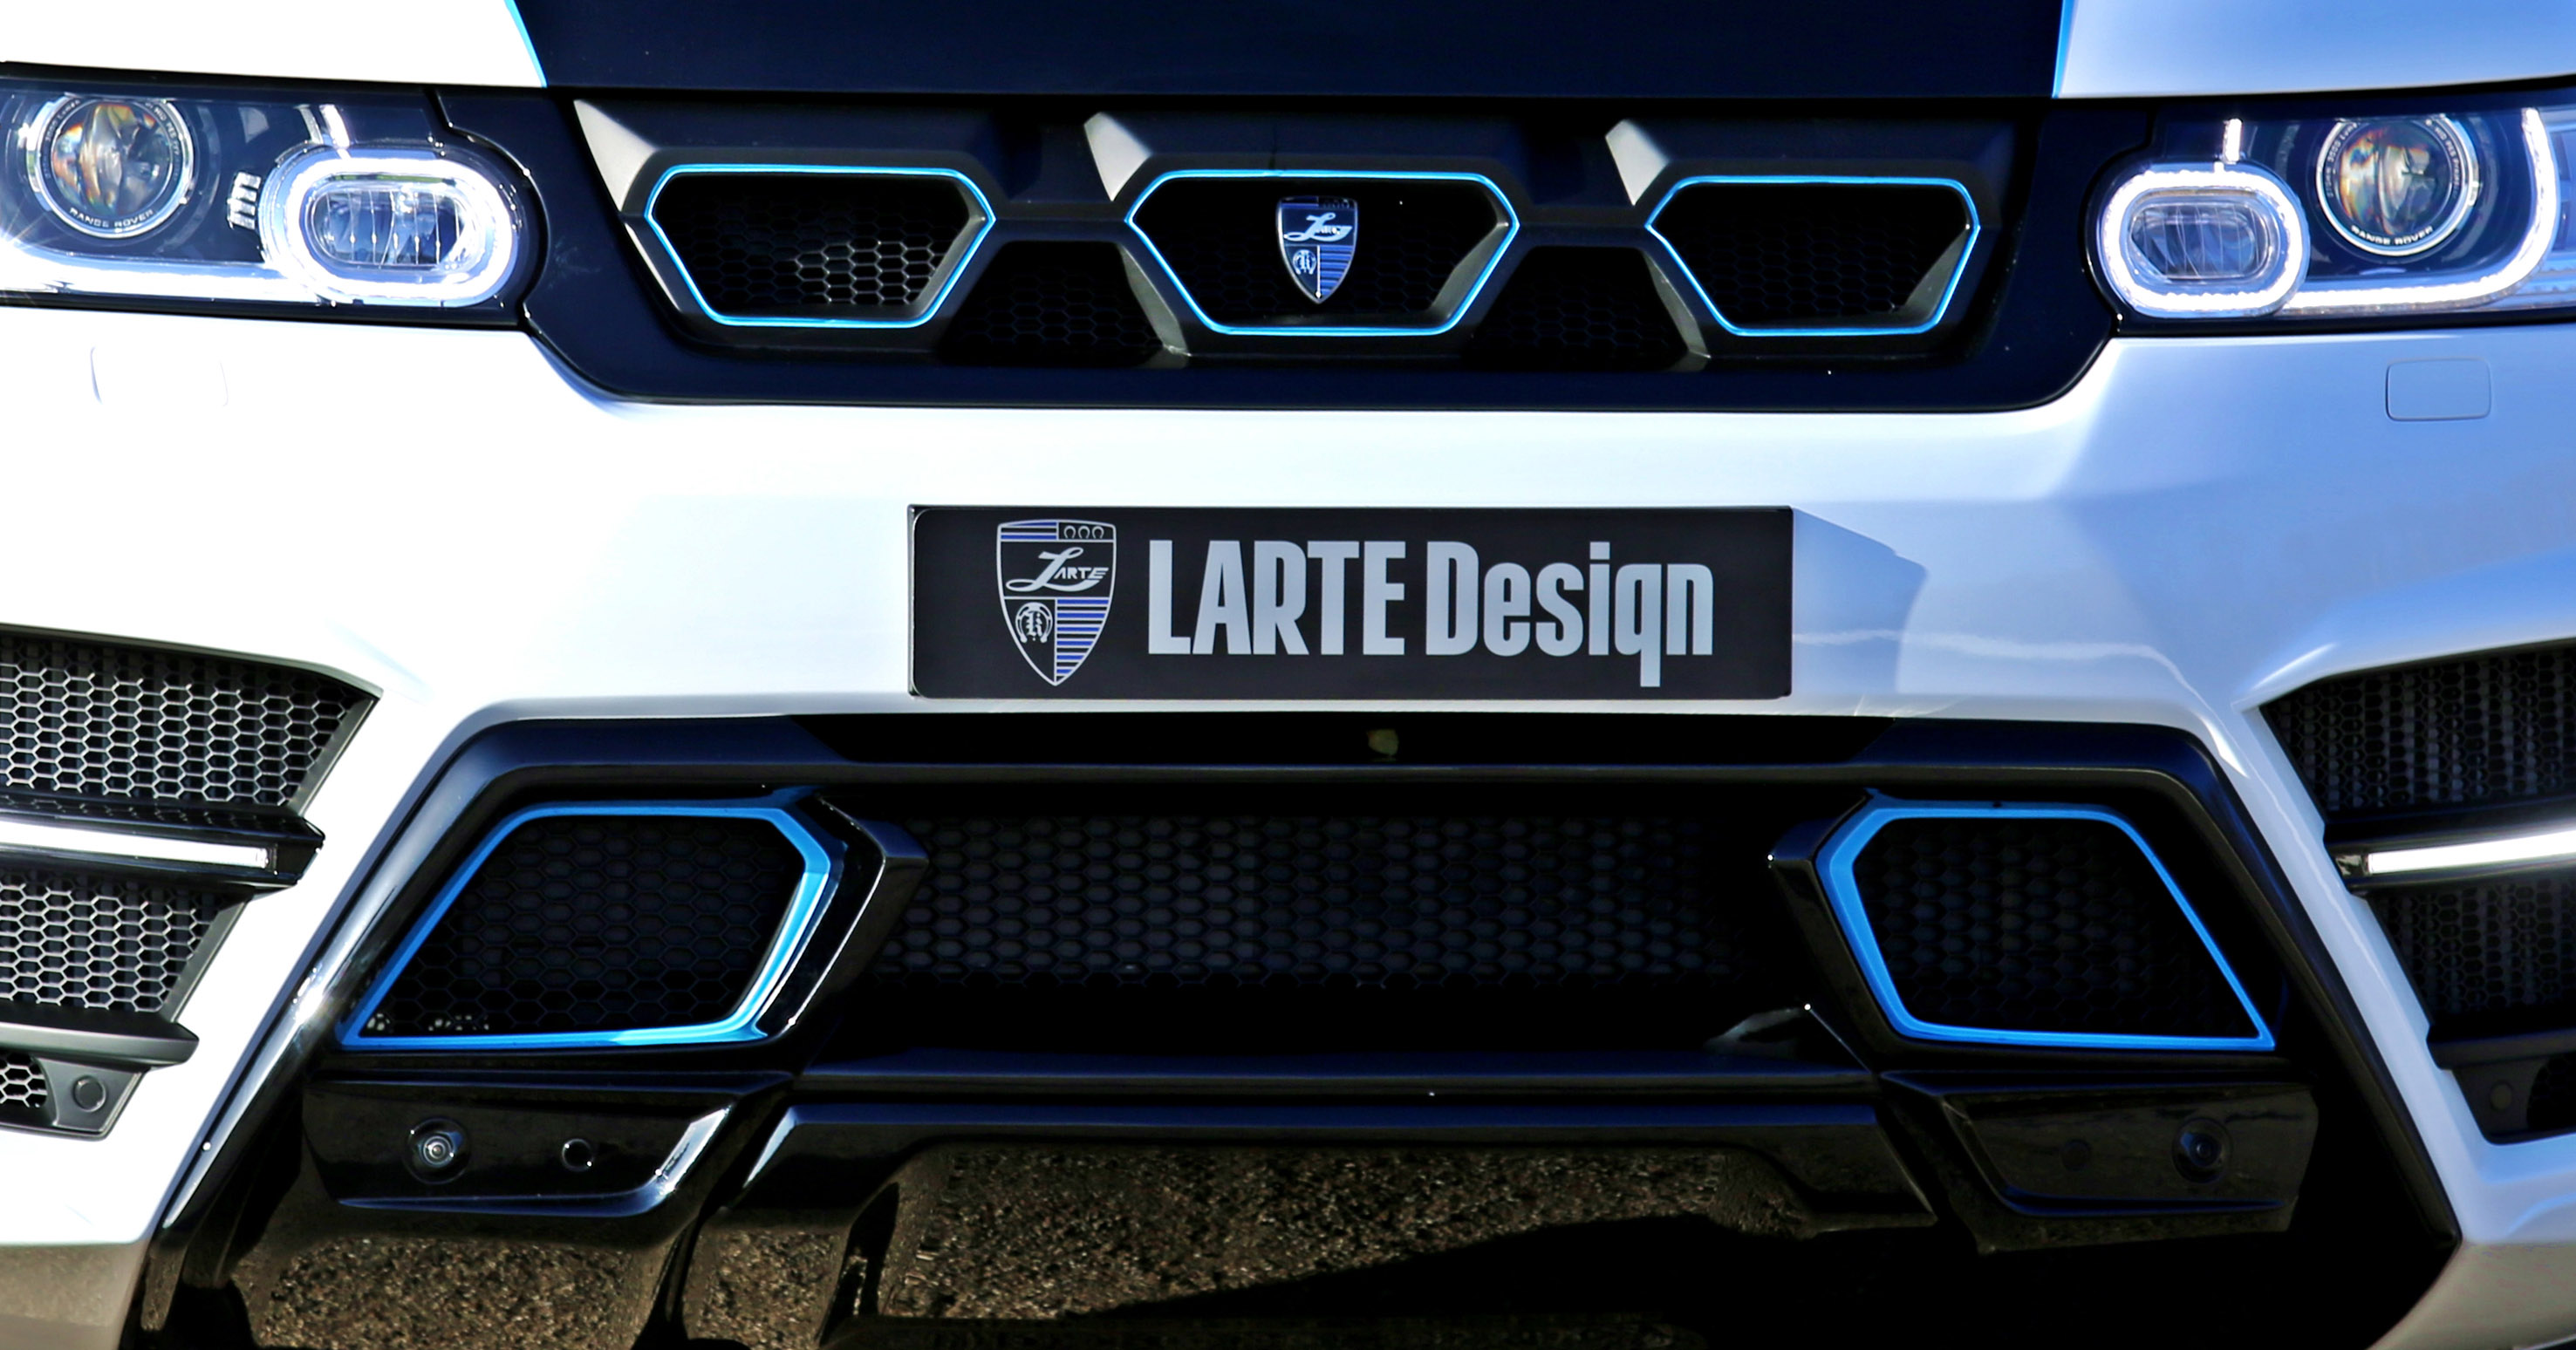 Larte Design Range Rover Sport Winner